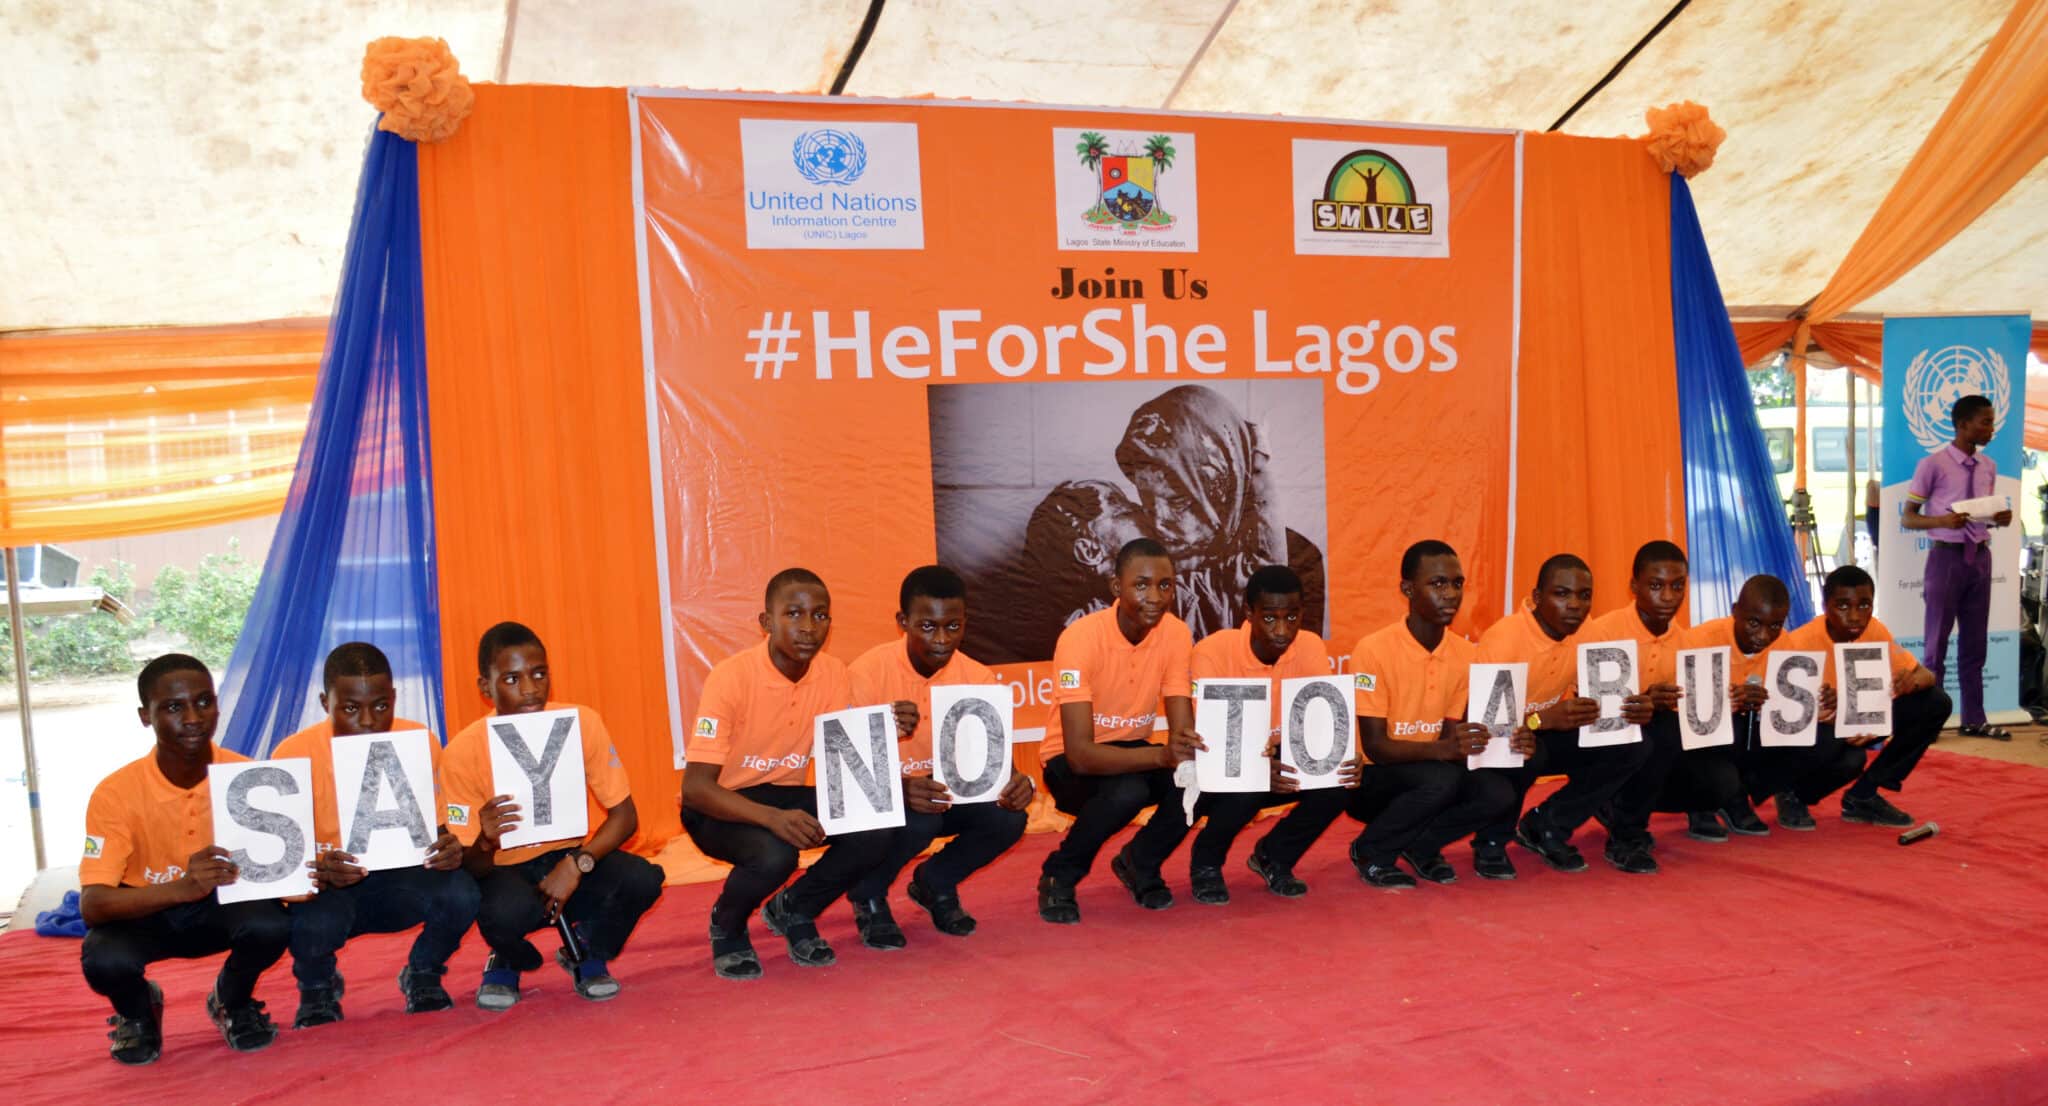 A Lagos, in Nigeria, oltre 350 persone riunite per dire no alla violenza contro le donne. Immagine ripresa da Flickr/UN Women in licenza CC